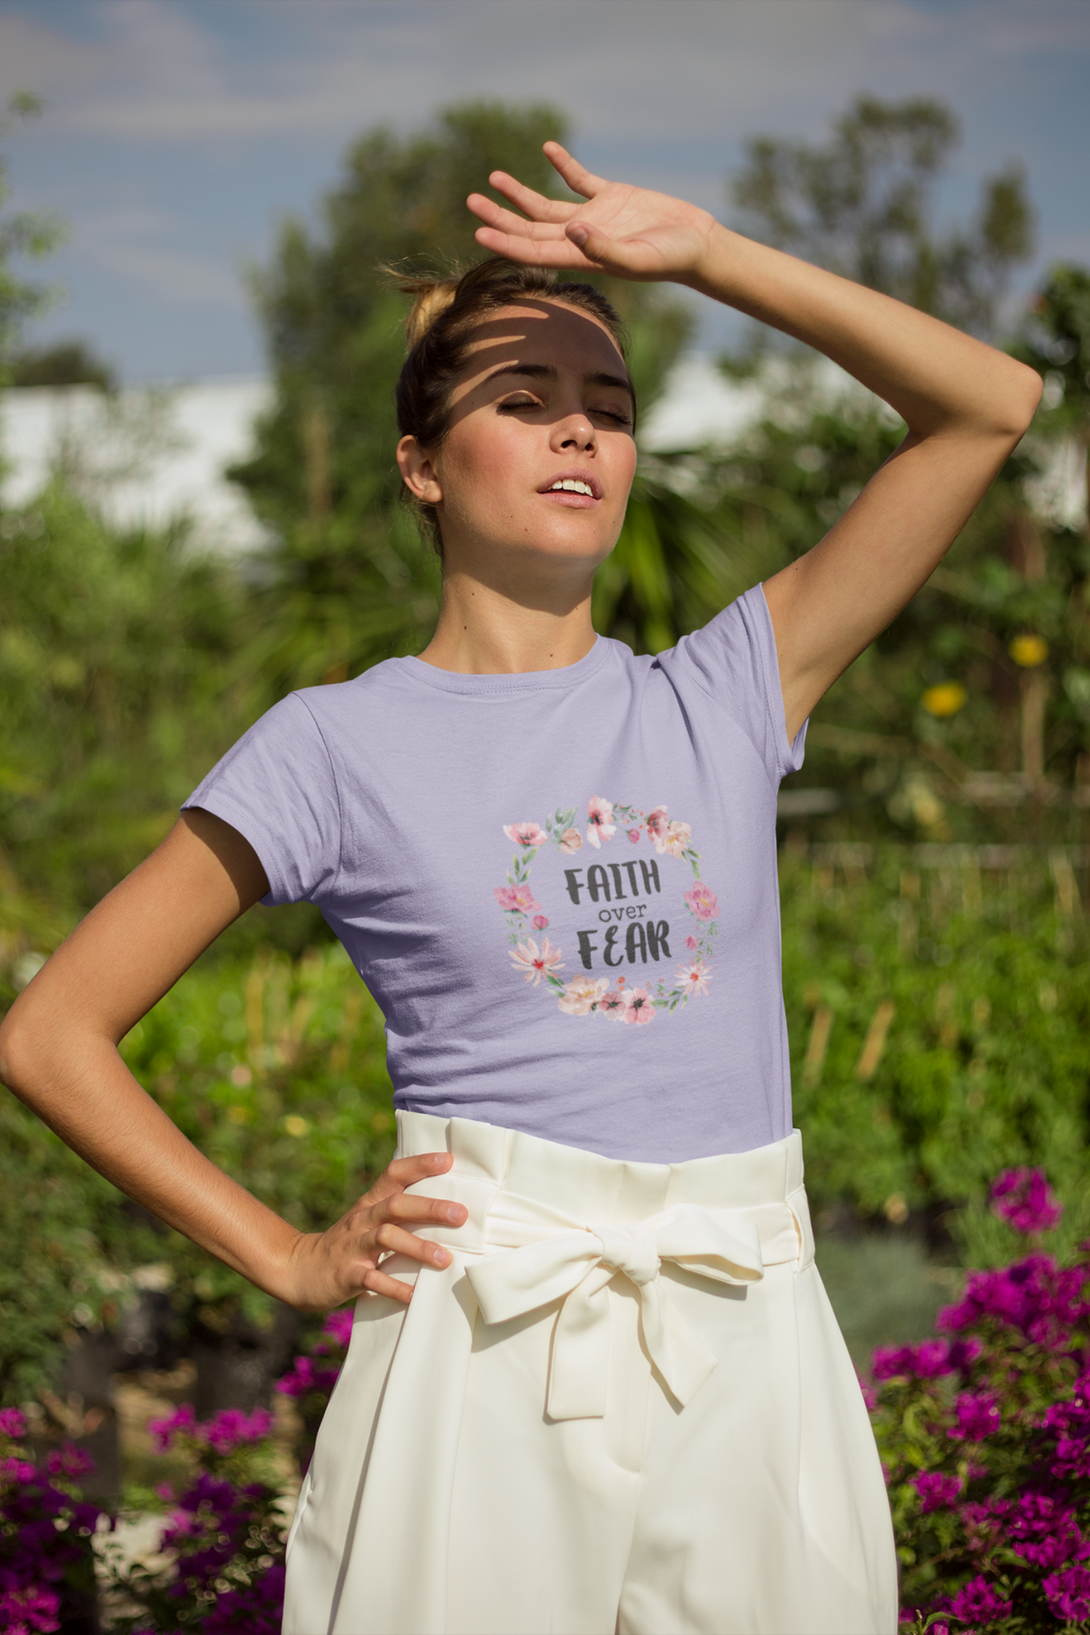 Faith Over Fear Printed T-Shirt For Women - WowWaves - 3